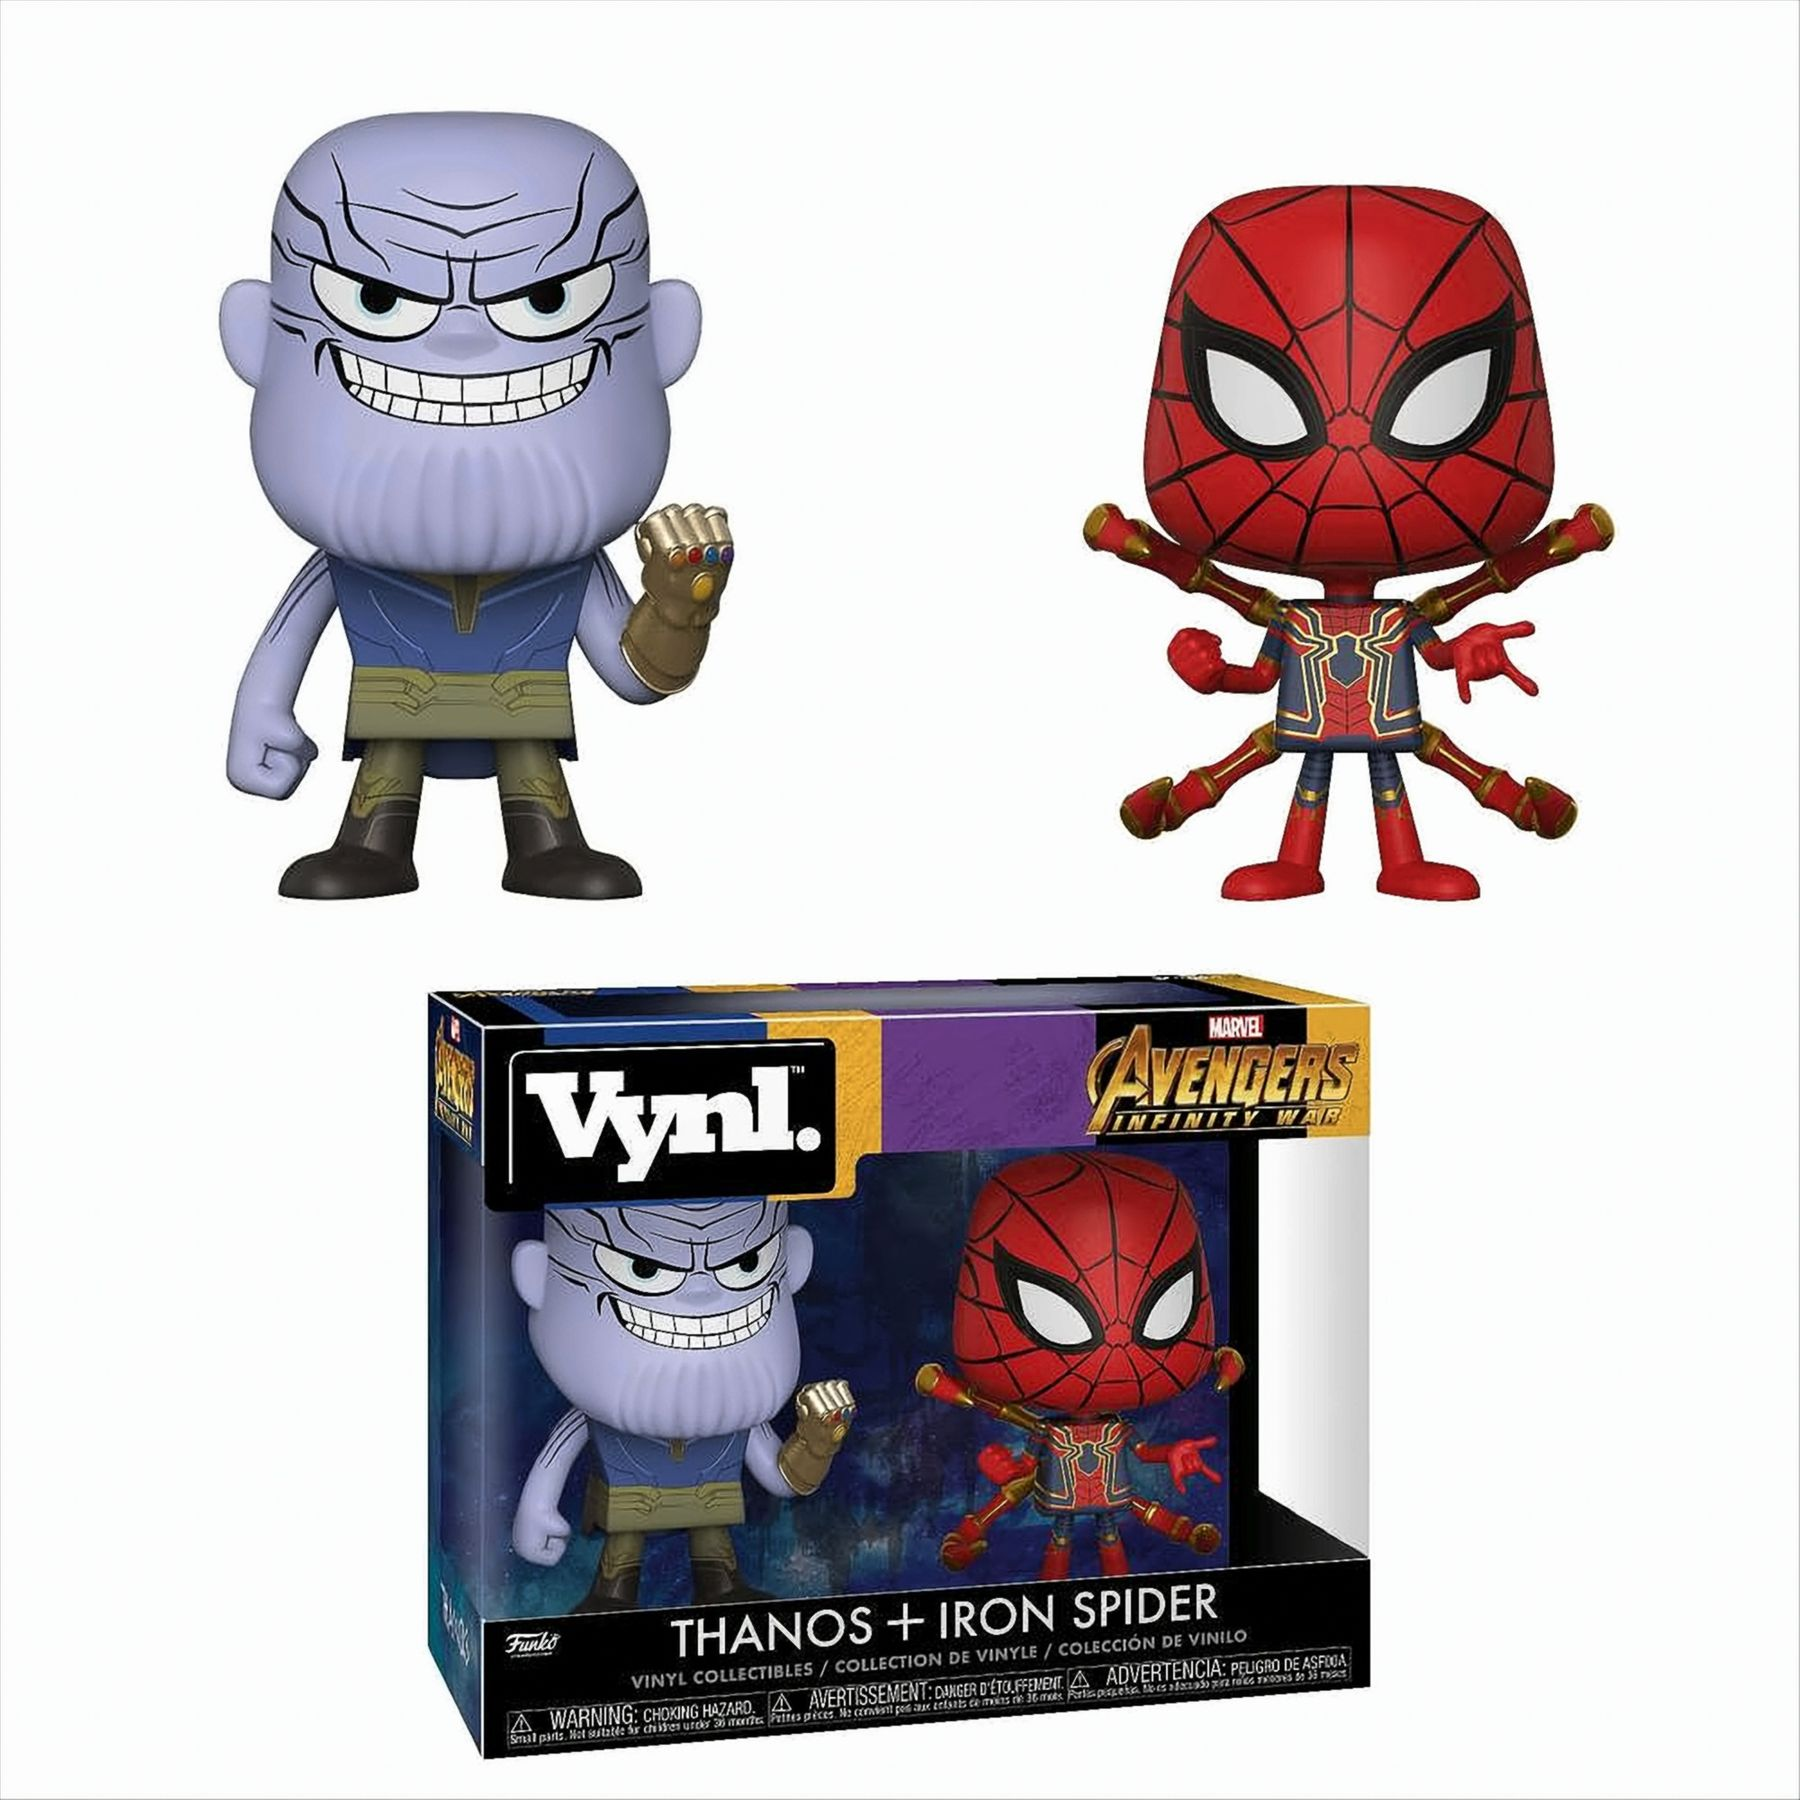 Funko Vynl. Spider und Thanos Iron